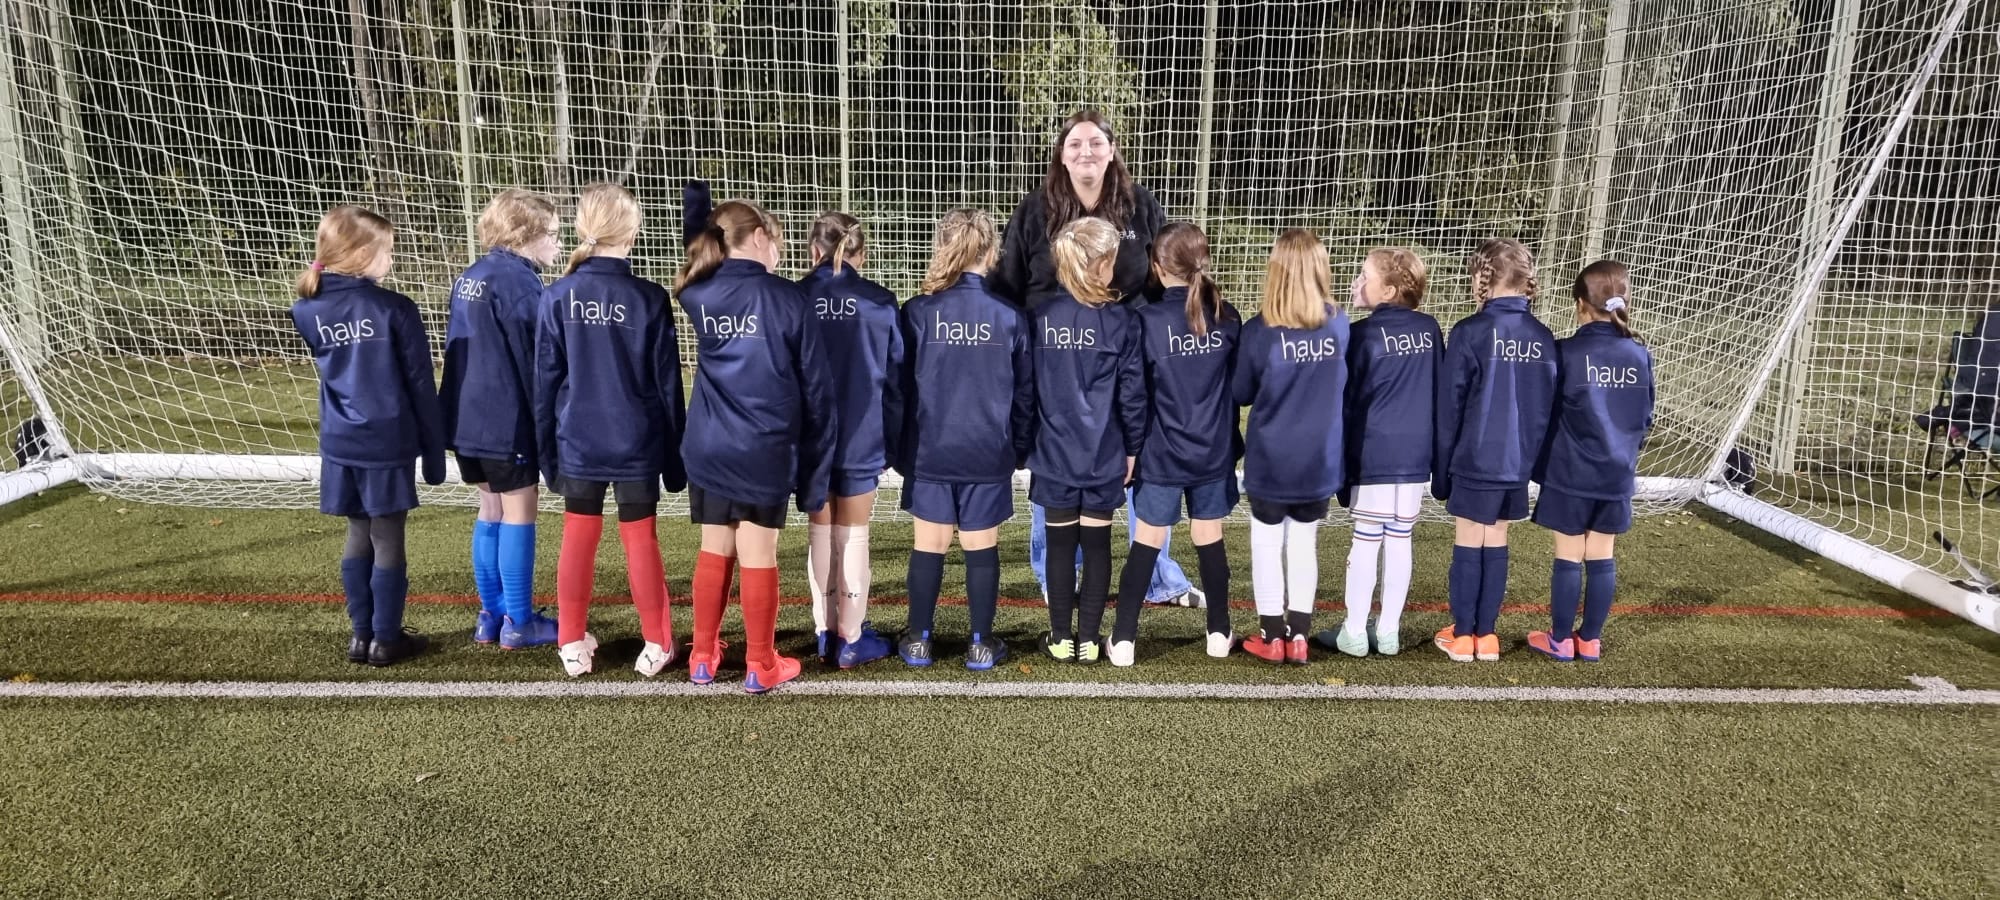 fleet girls football team.